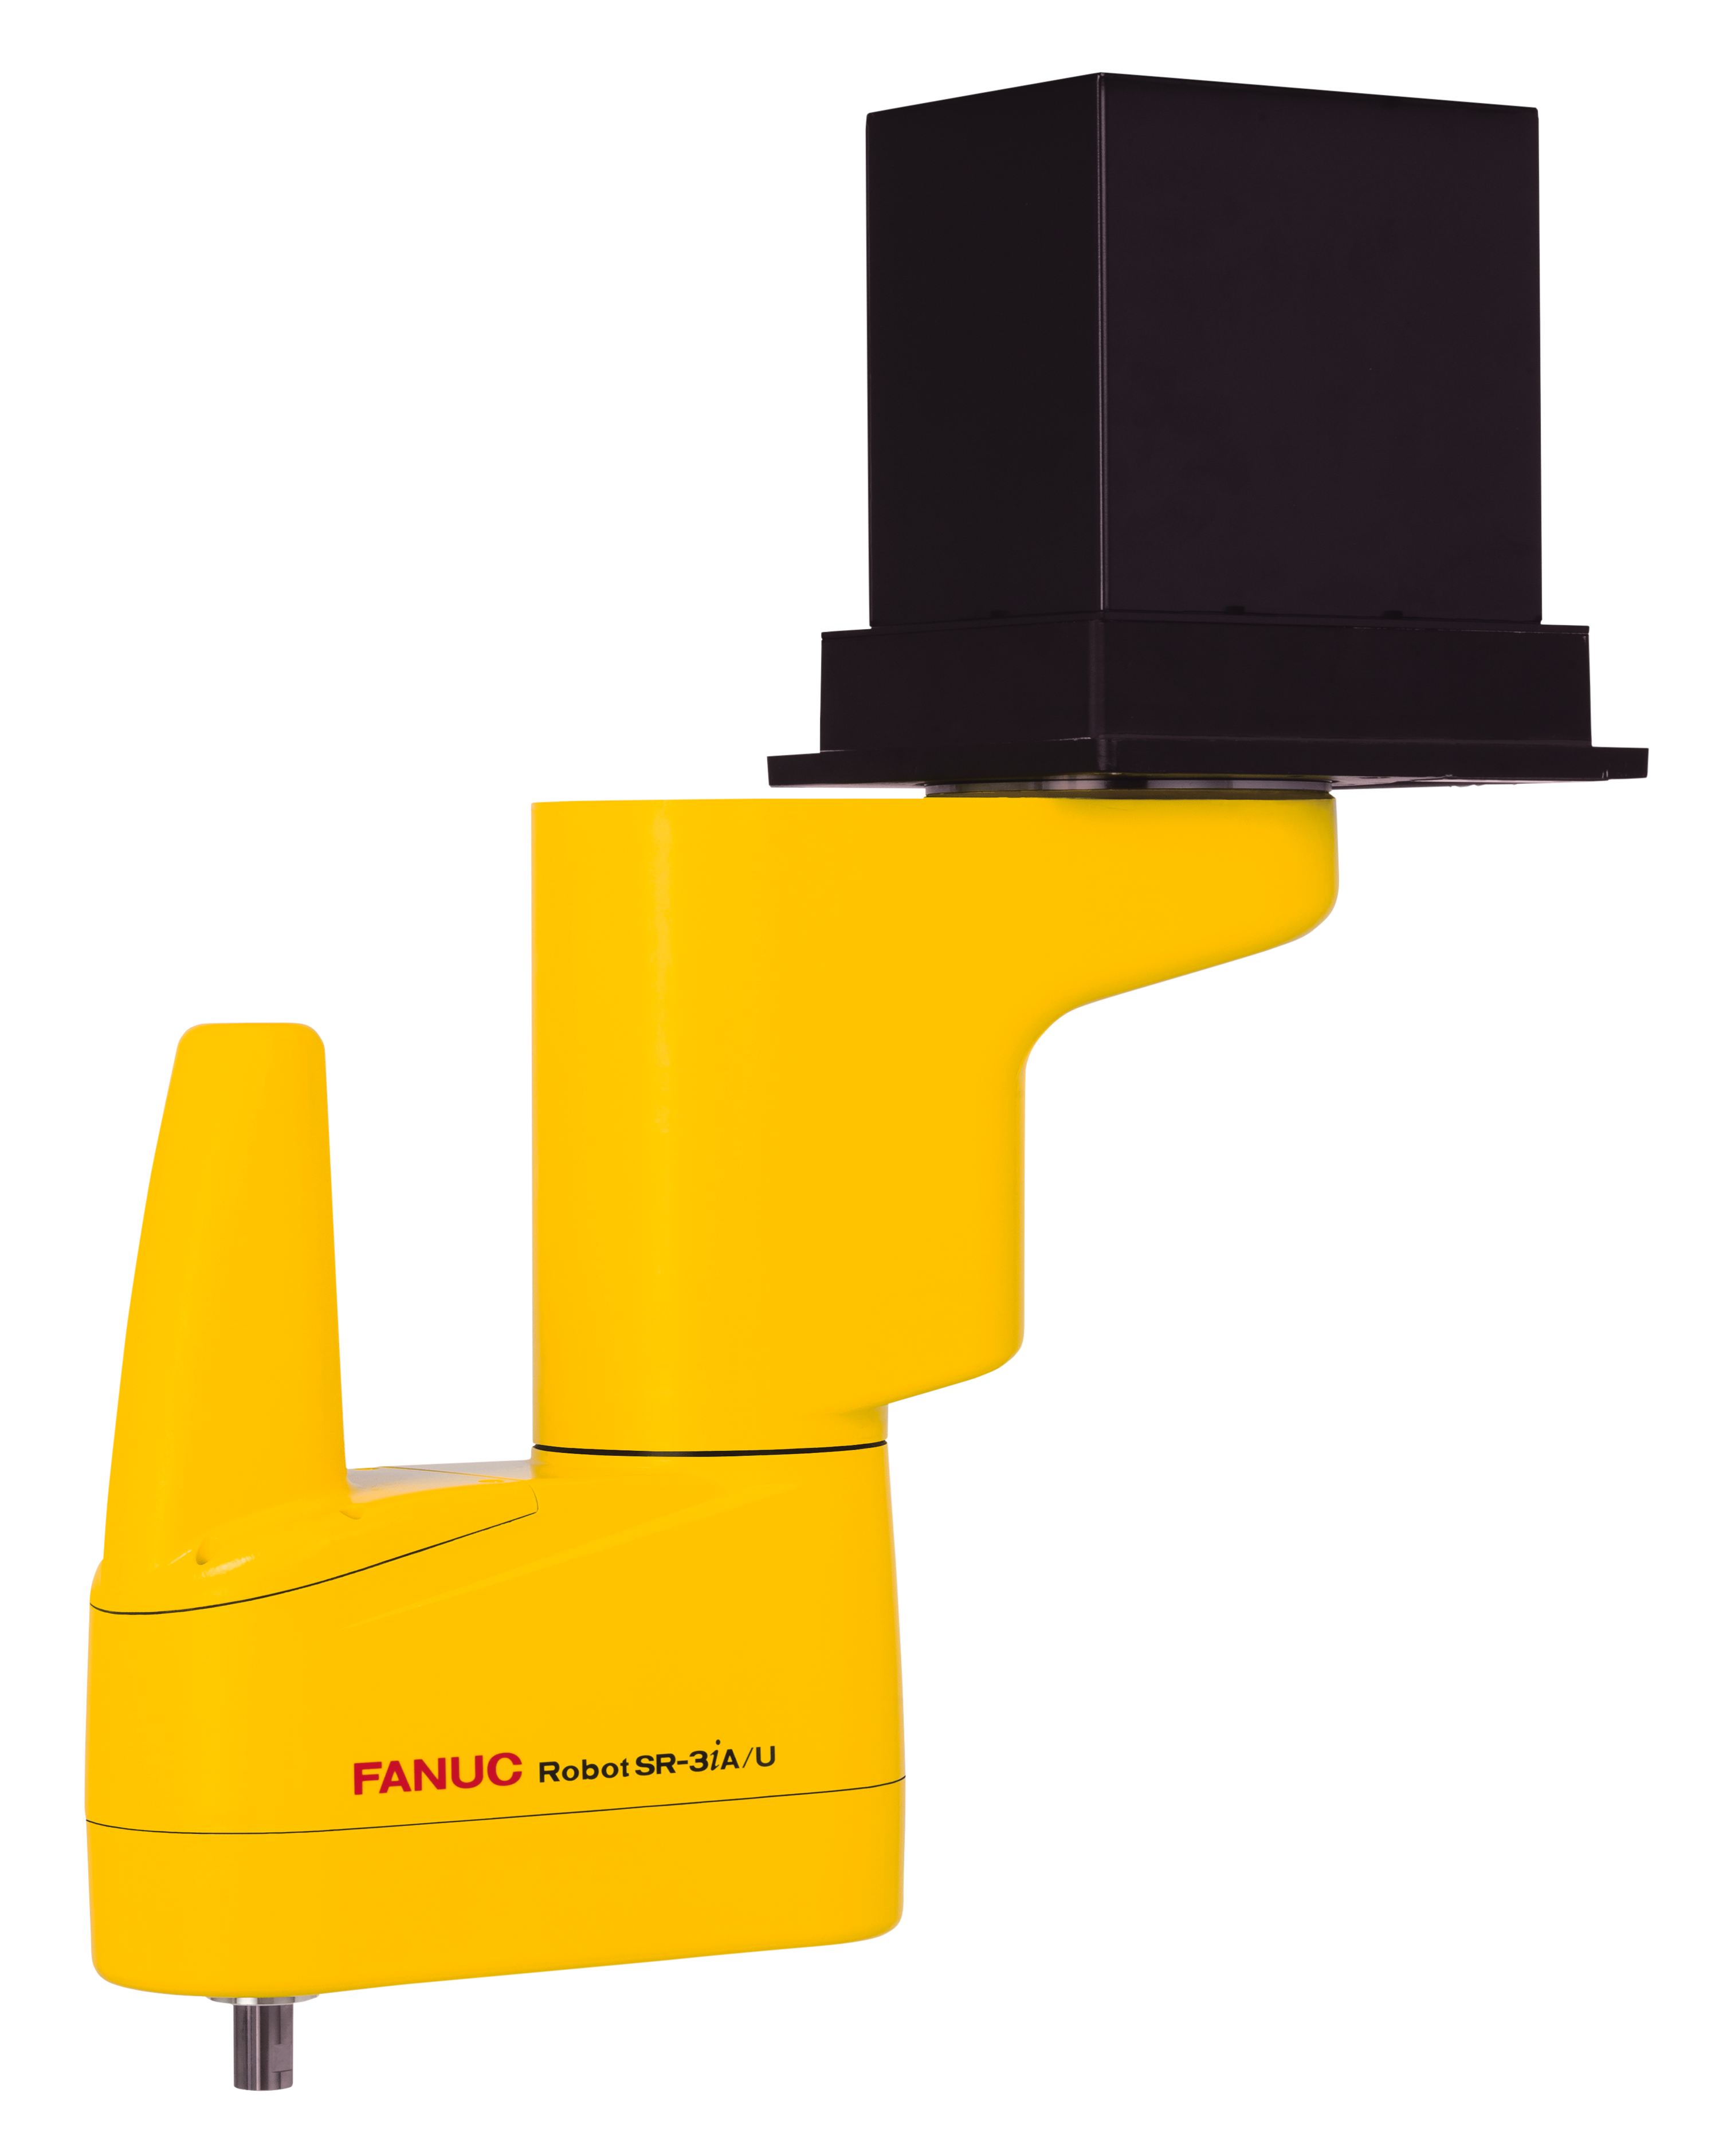 FANUC SCARA懸吊式水平關節機械手臂。
世紀貿易／提供